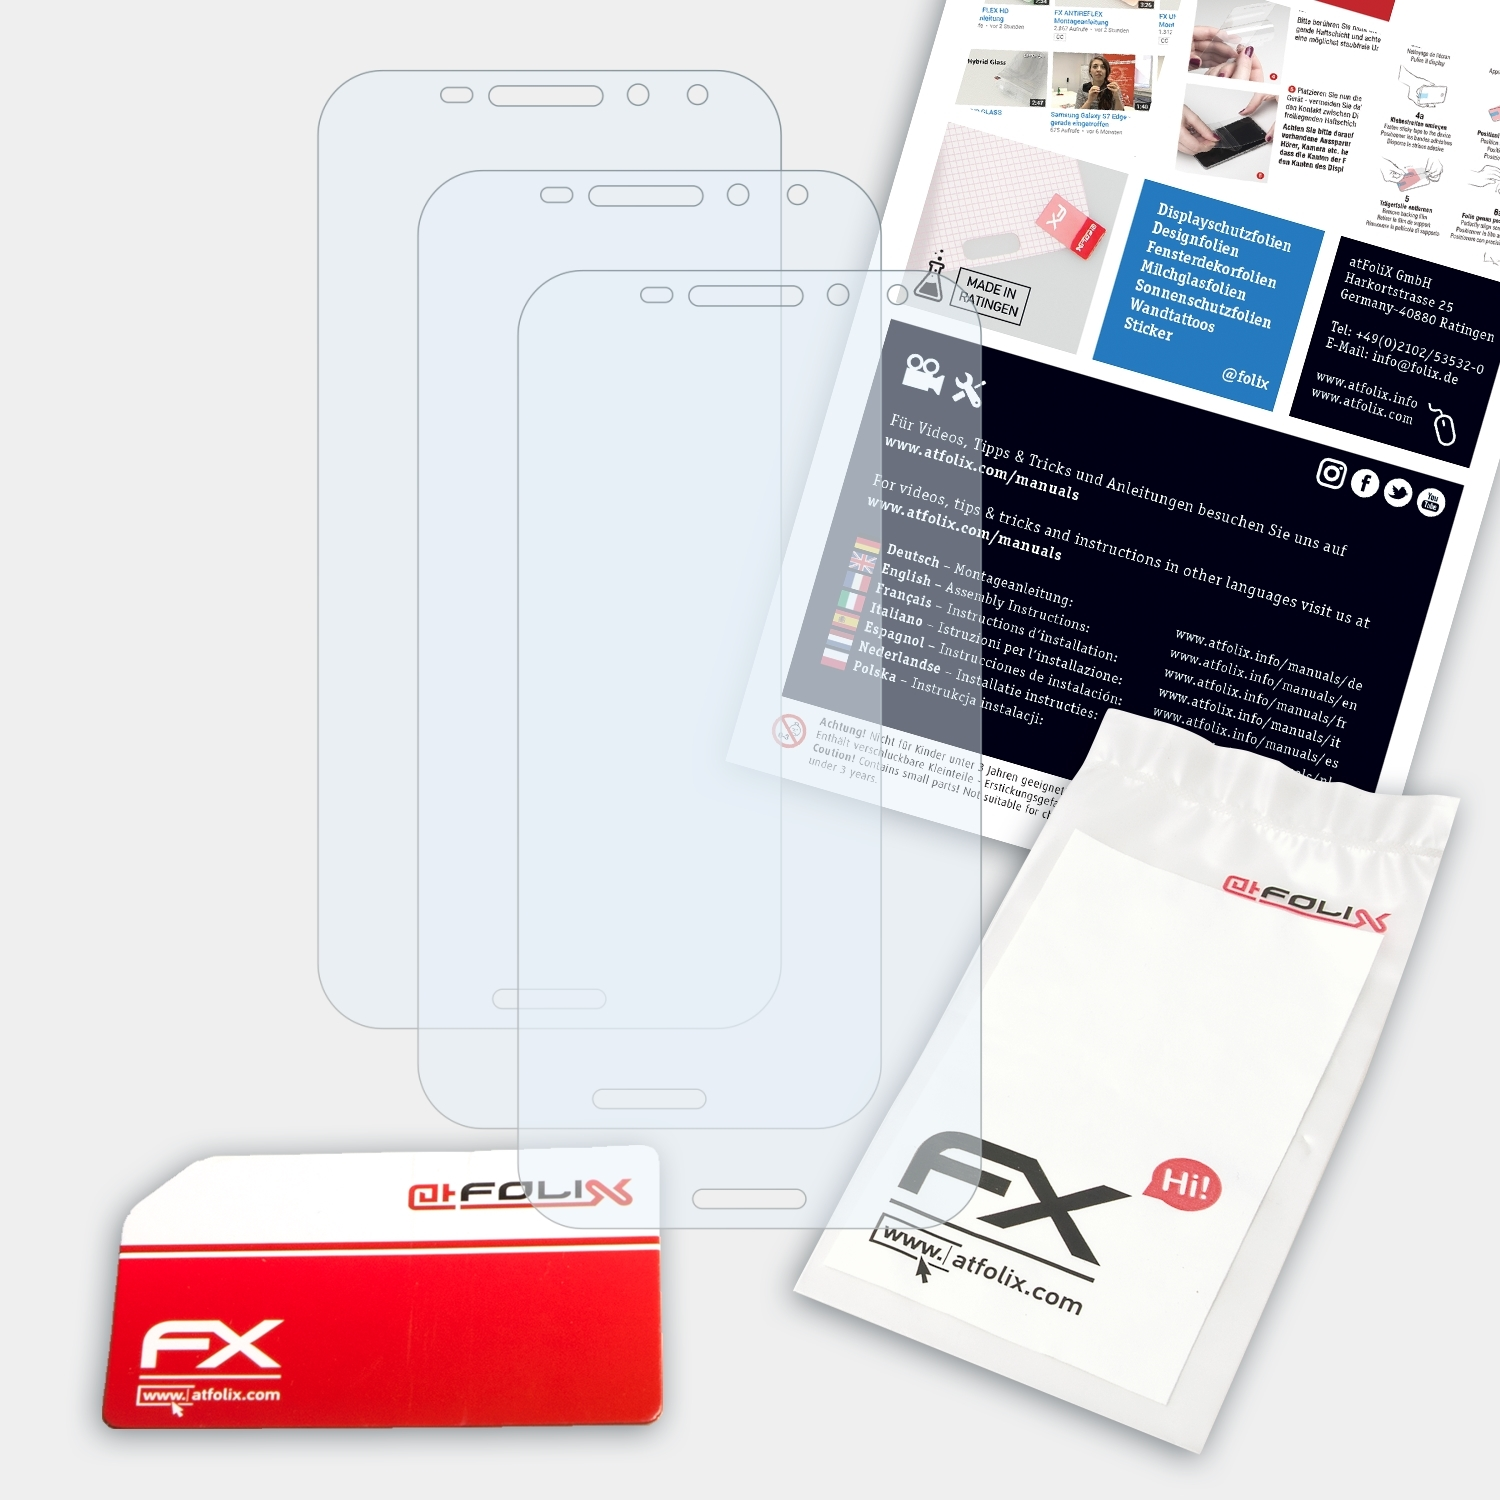 Vodafone FX-Clear Displayschutz(für ATFOLIX 3x Smart N8)